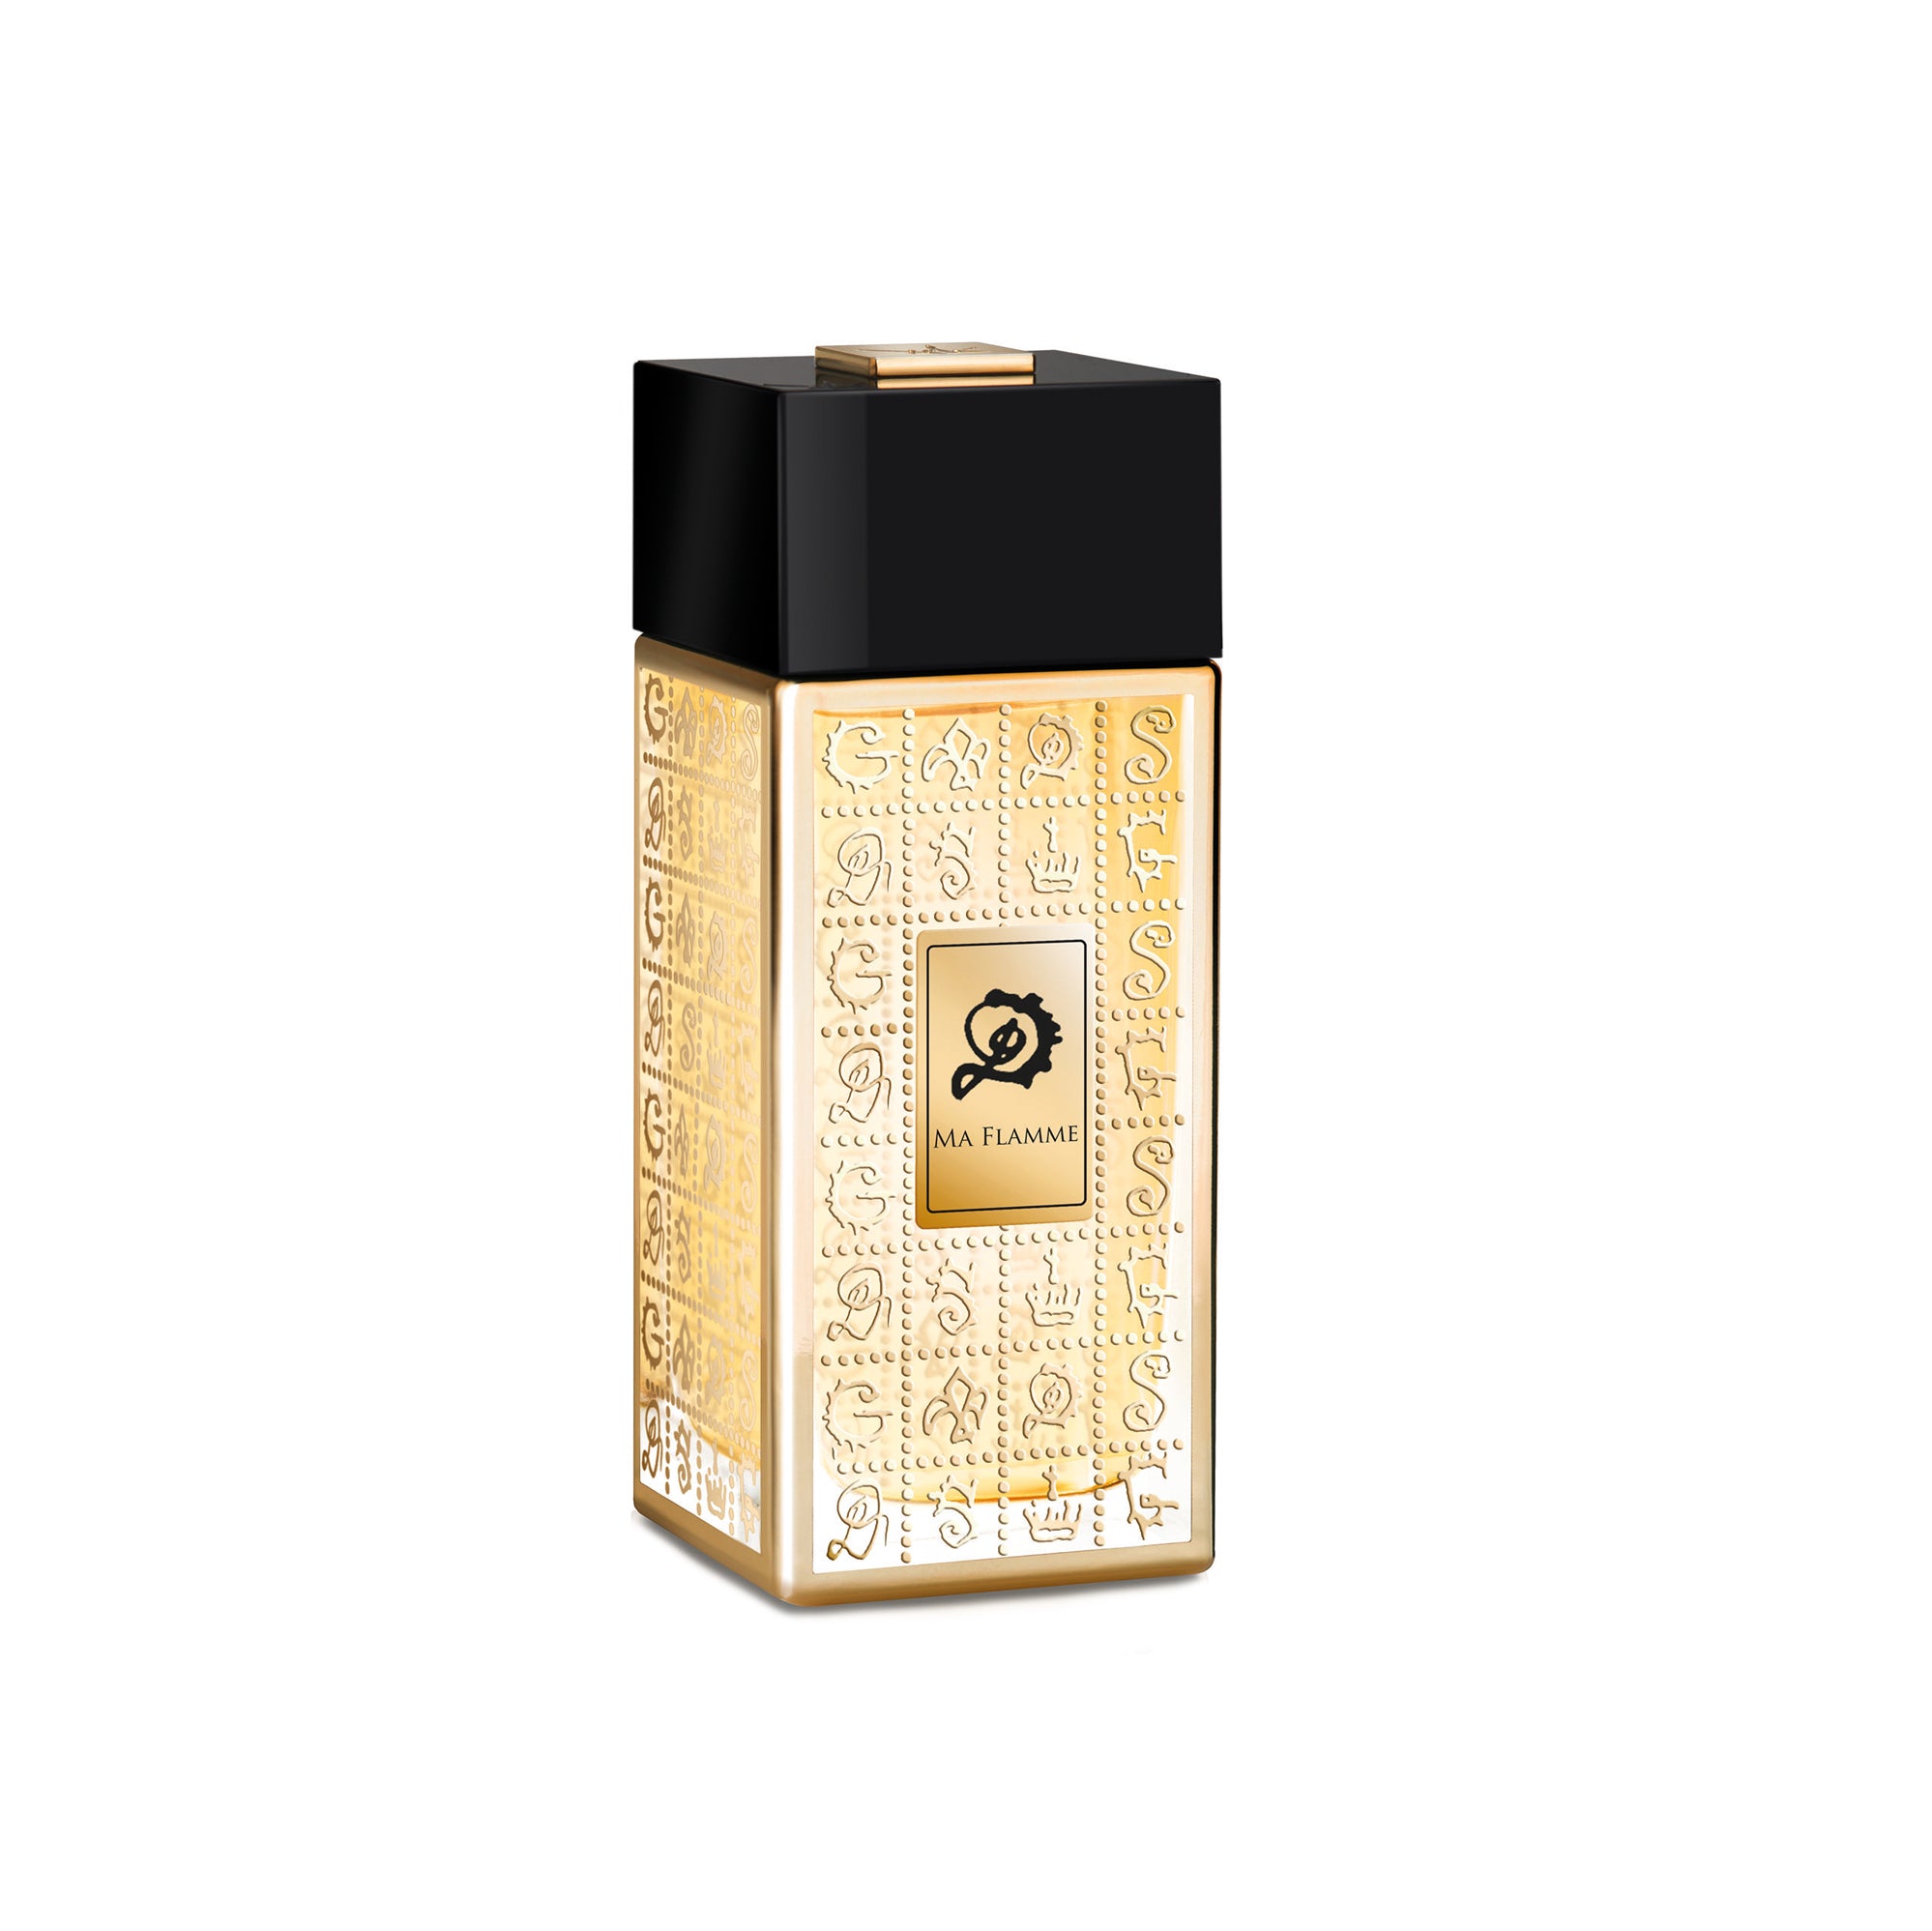 Ma Flamme Eau de Parfum 100ml Bottle by Dalí Haute Parfumerie